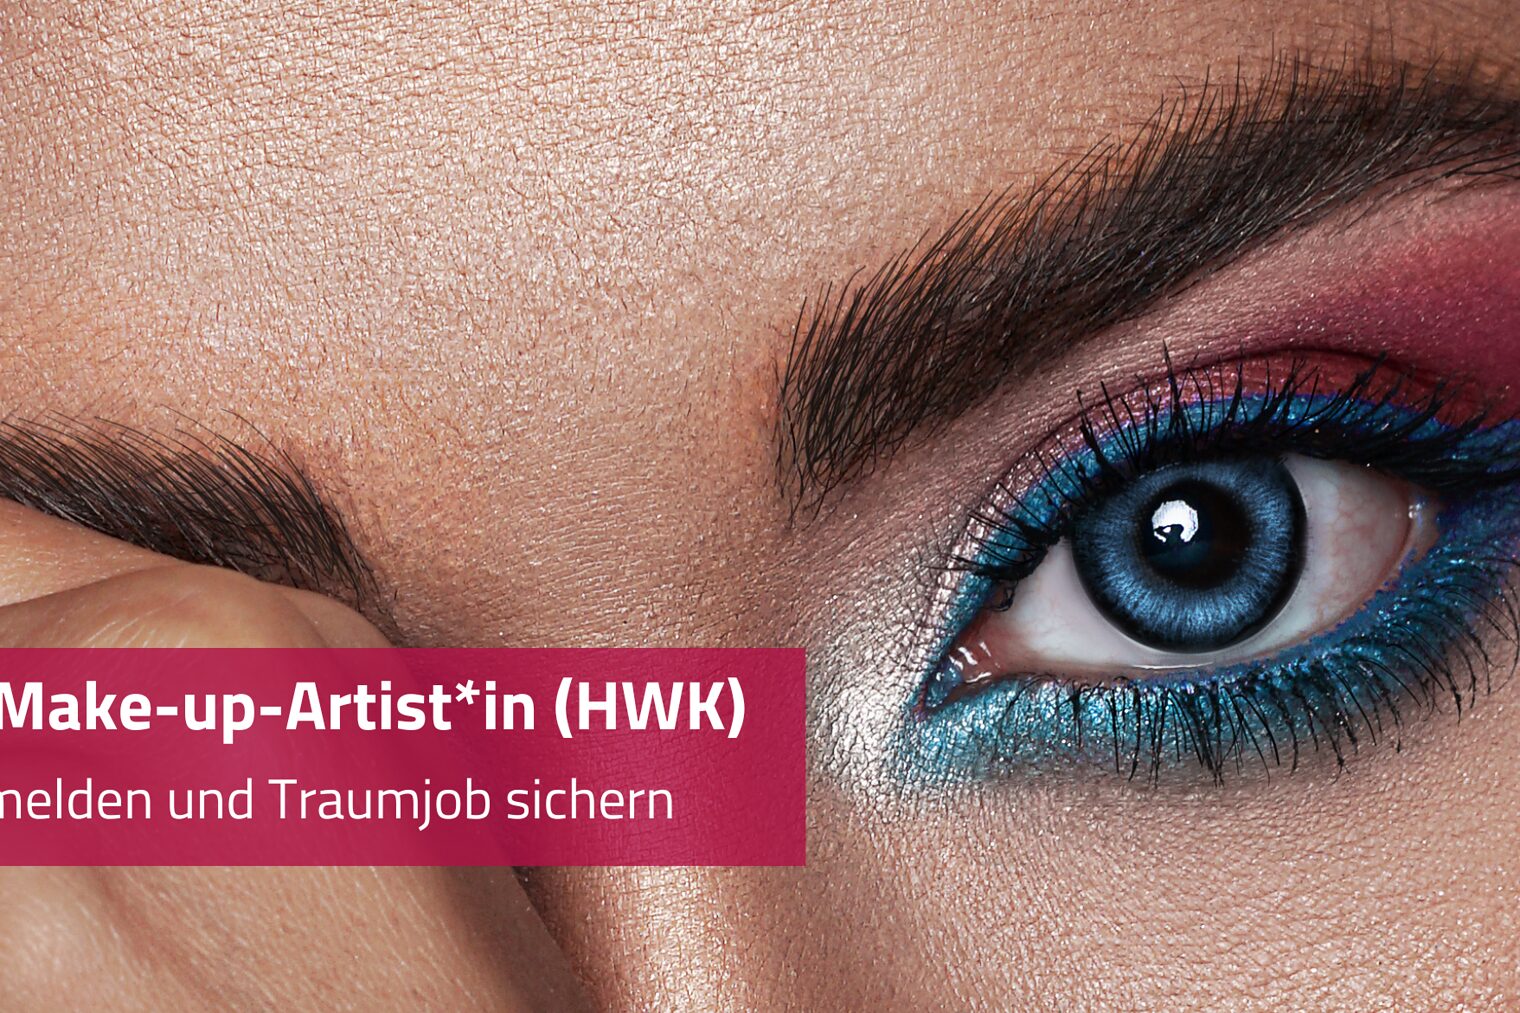 Make-up-Artist werden Handwerkskammer OWL zu Bielefeld